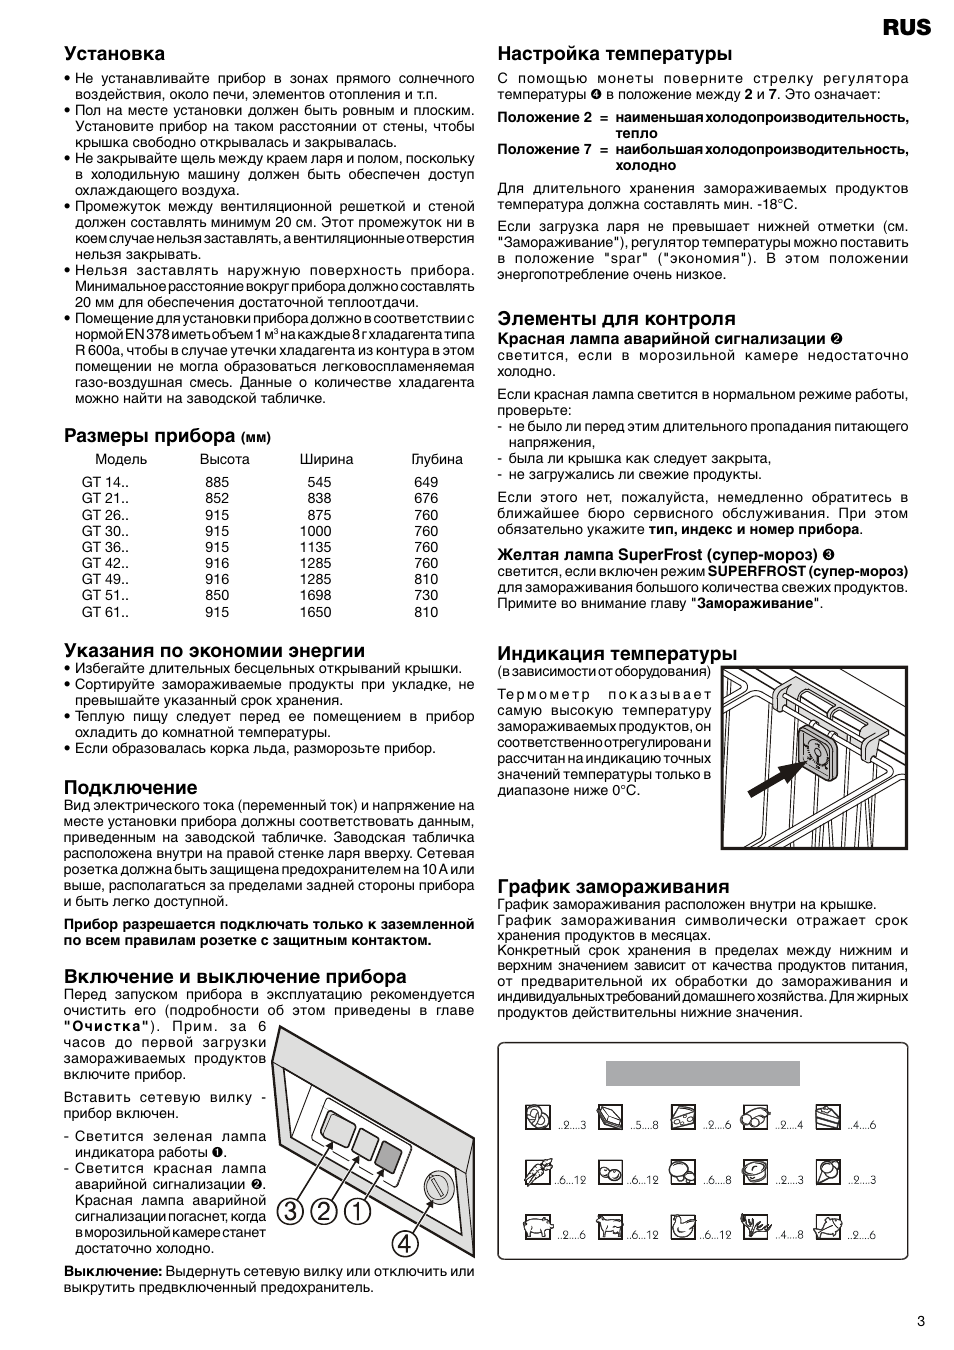 Холодильник Орск 115 инструкция